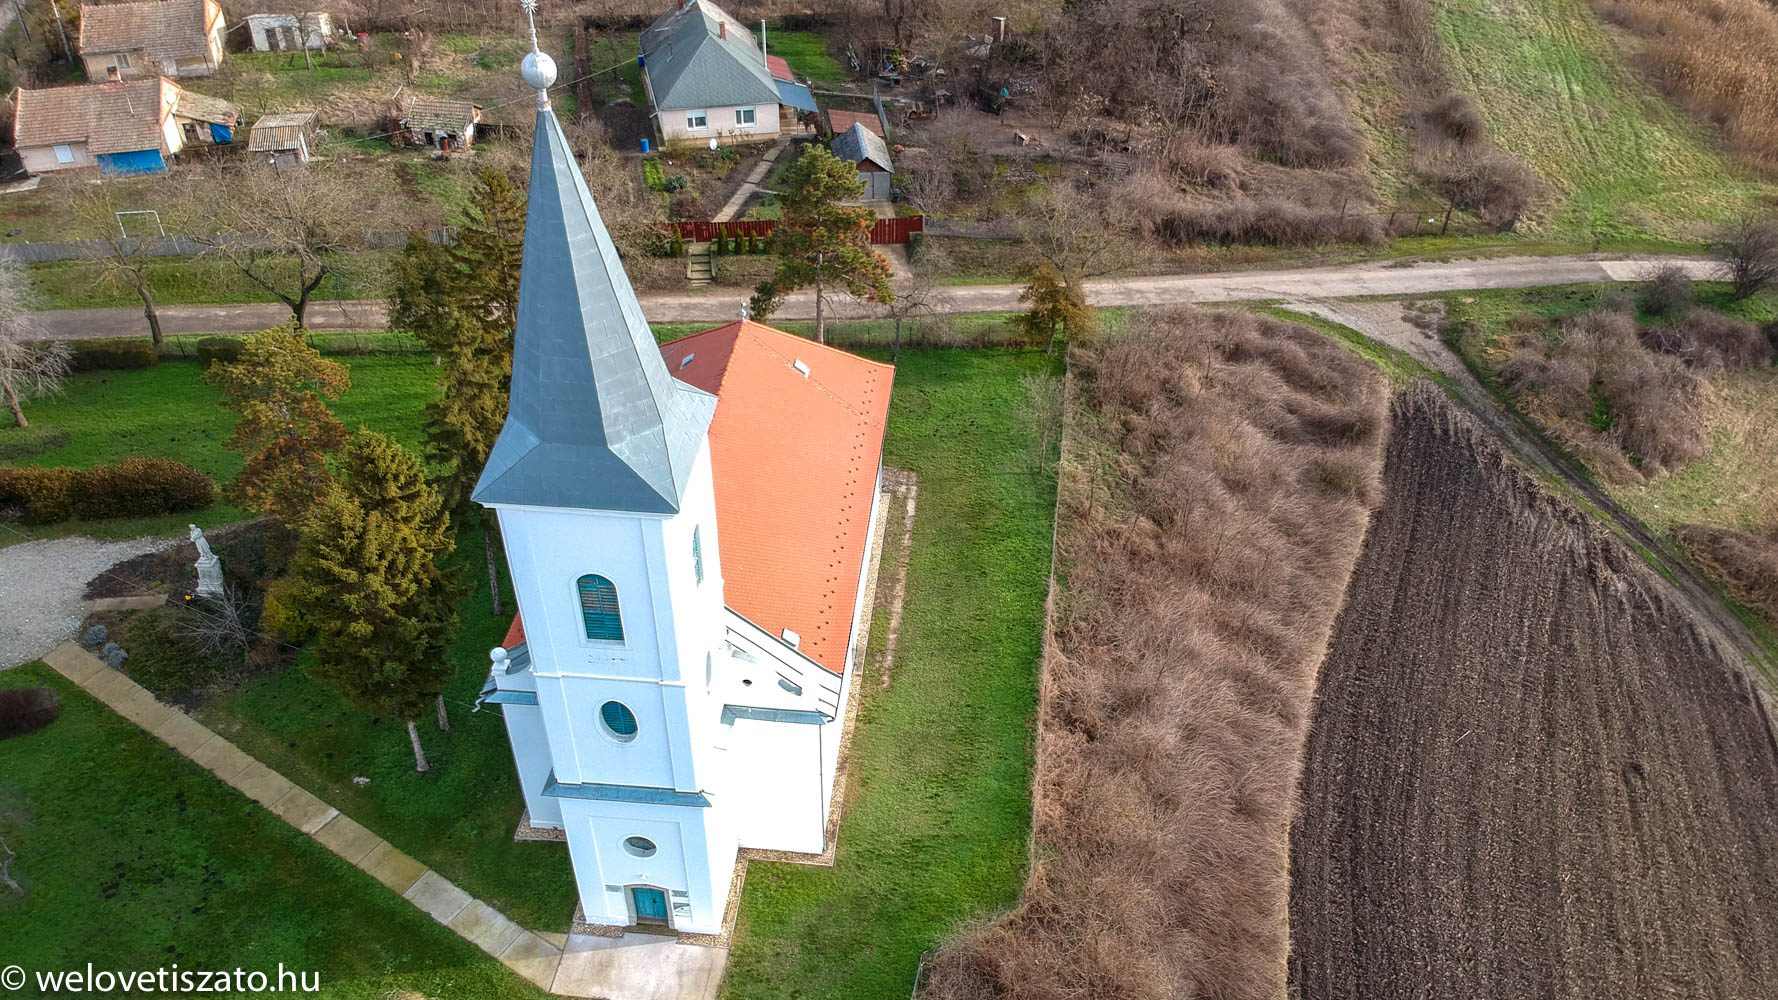 Tiszaigar református templom, az arborétum felé vezető út mellett